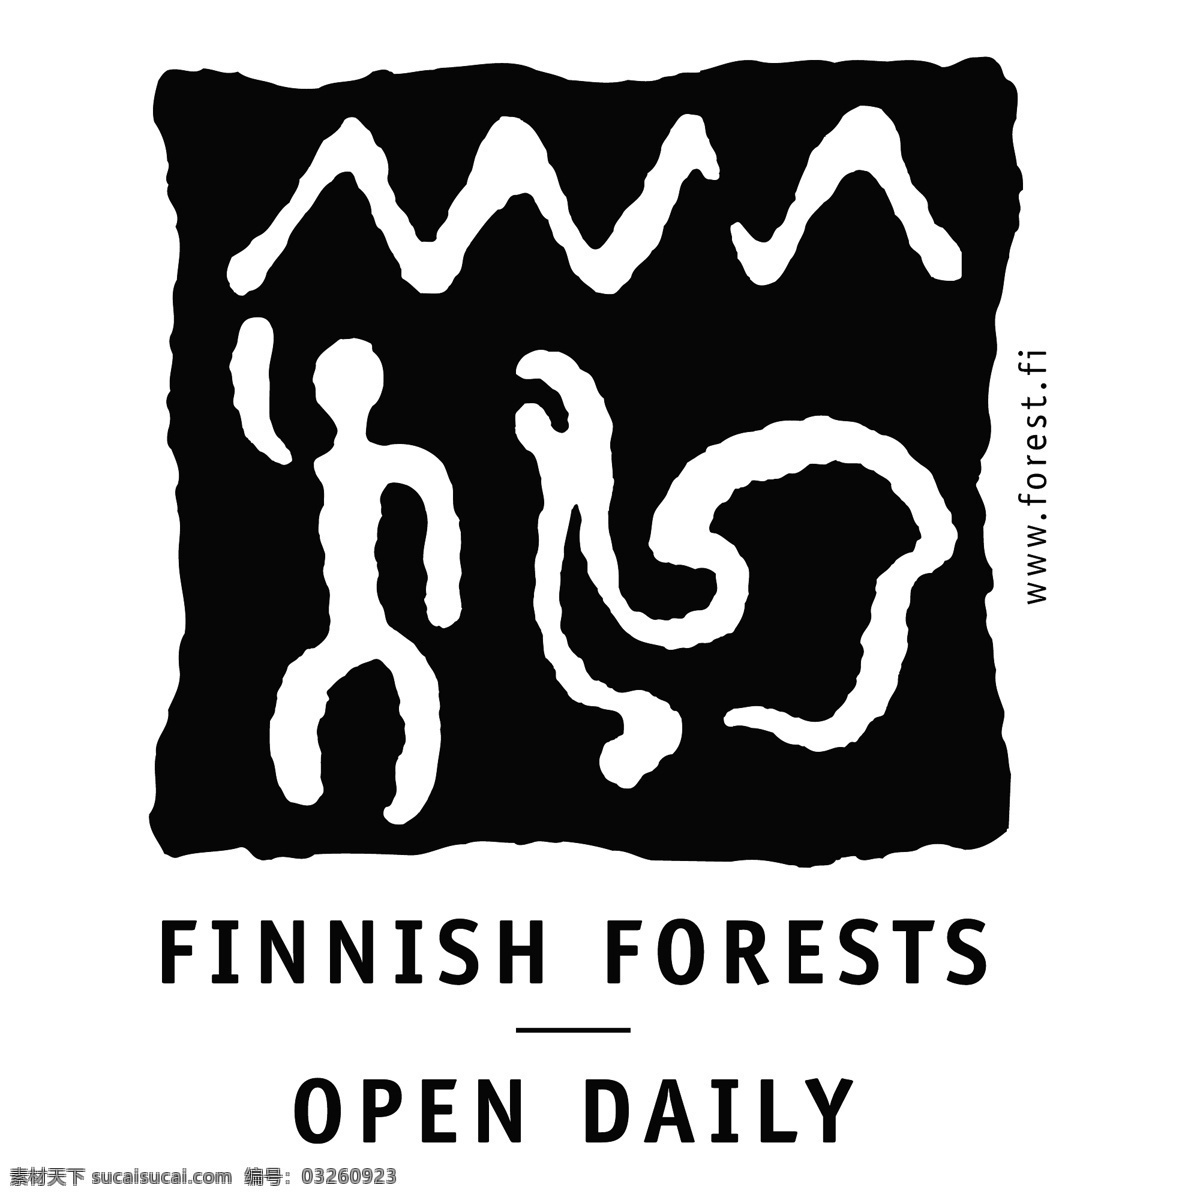 芬兰 森林 天开 放免 费 免费 每天 开放 标志 开放日 logo psd源文件 logo设计